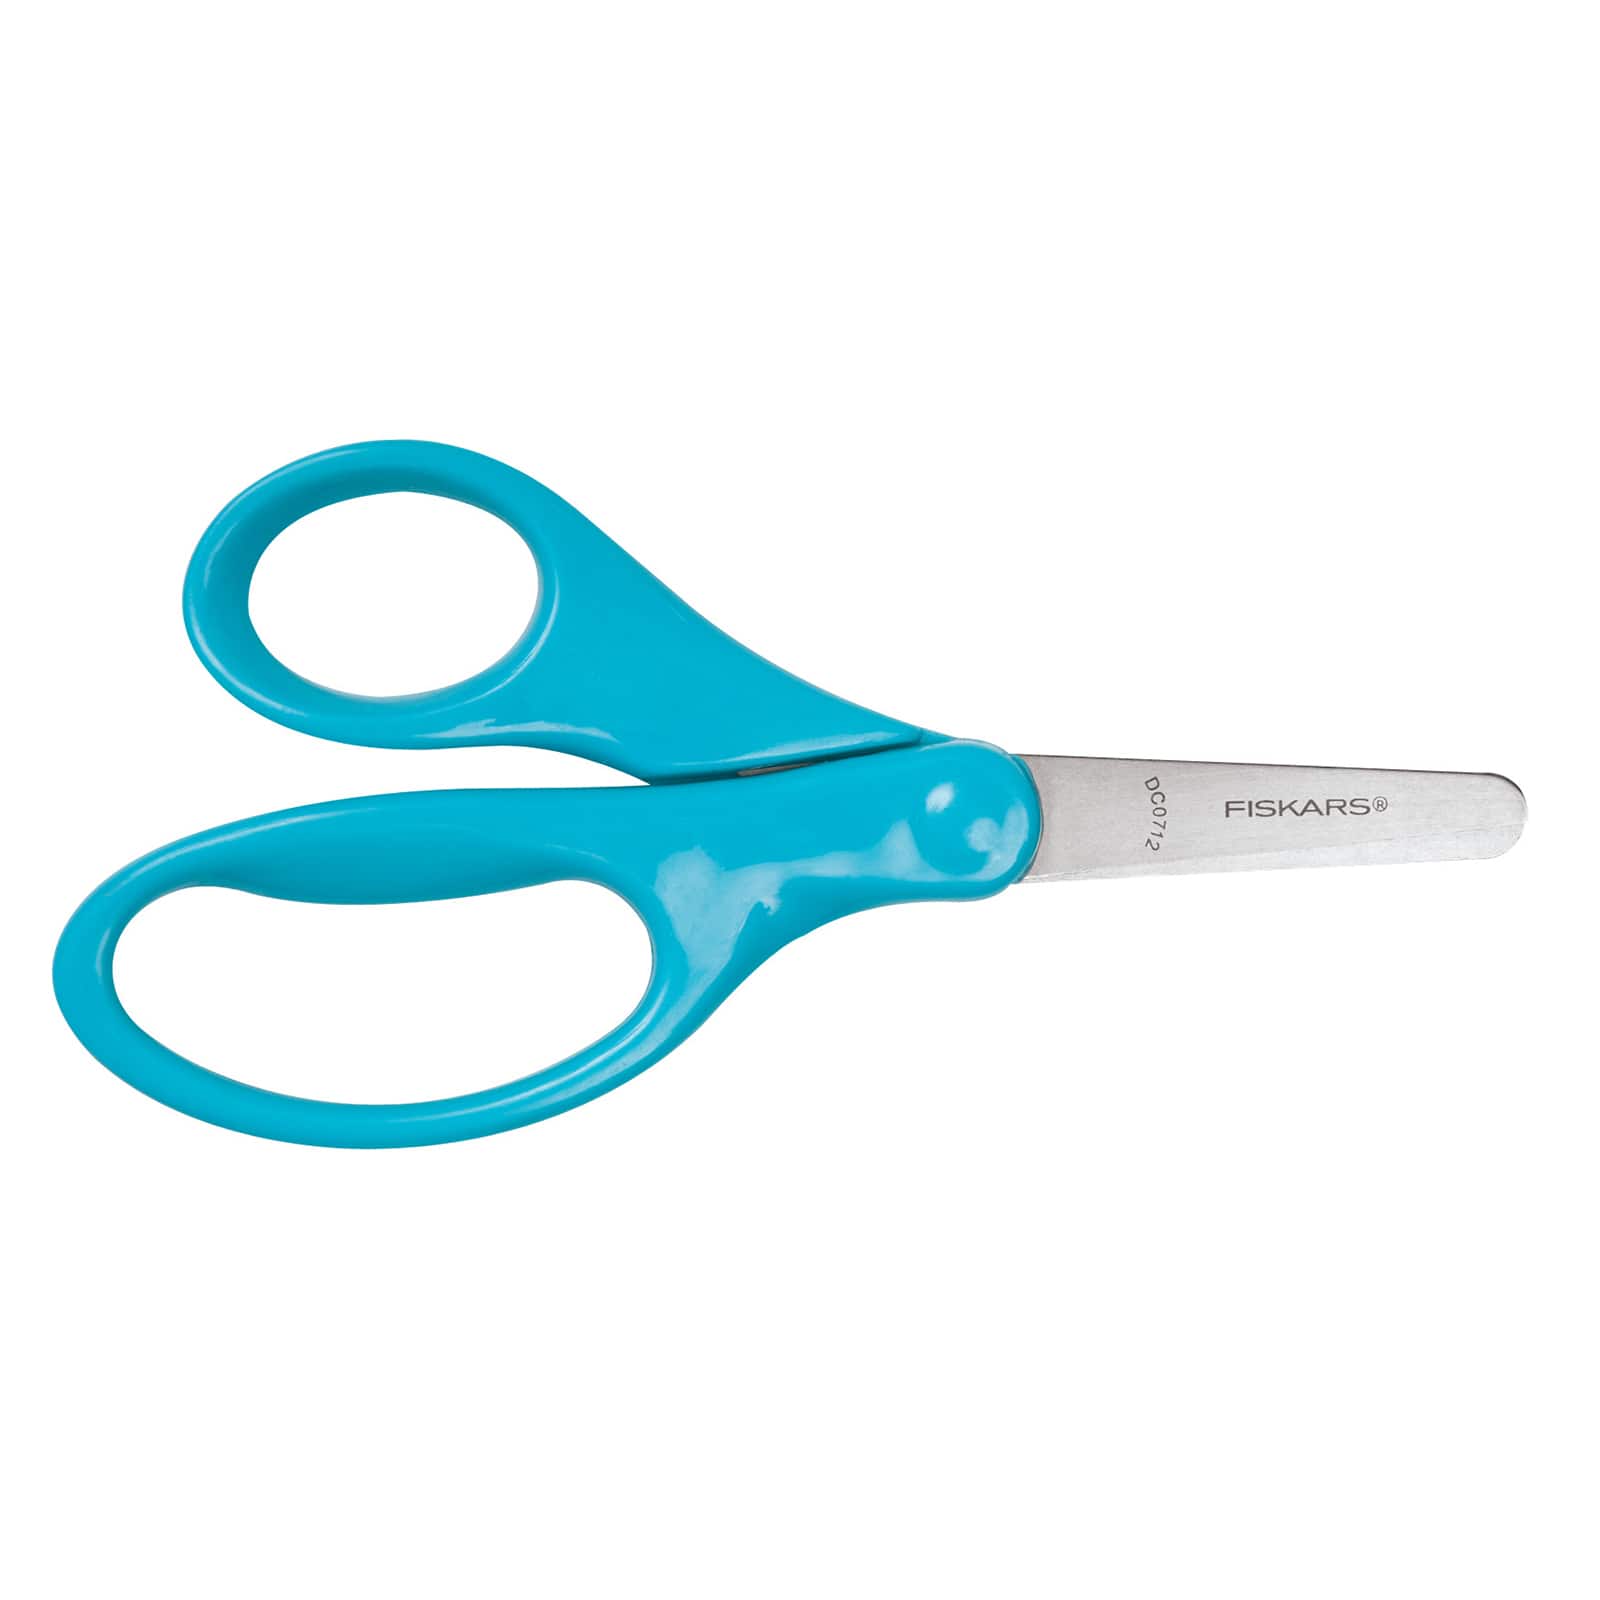 Pen + Gear 5 inch Kids Scissors 2 count (Blue/Green)